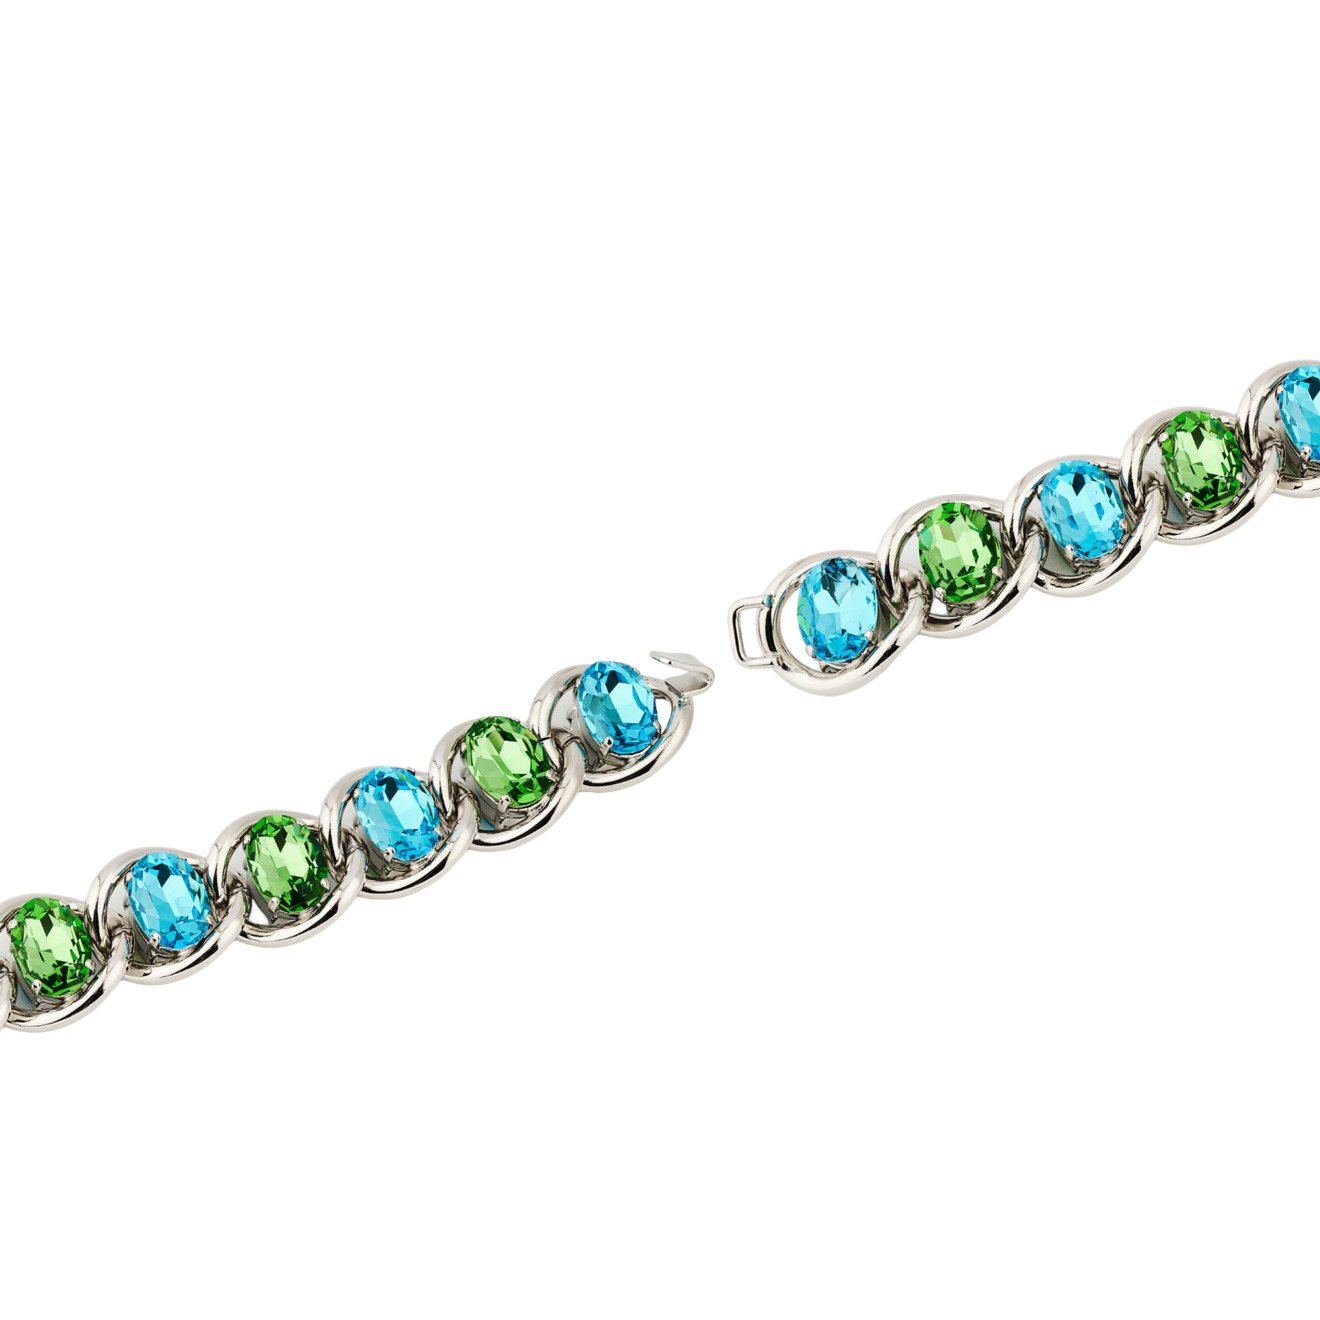 Marni Браслет-цепь с зелено-голубыми кристаллами цена и фото